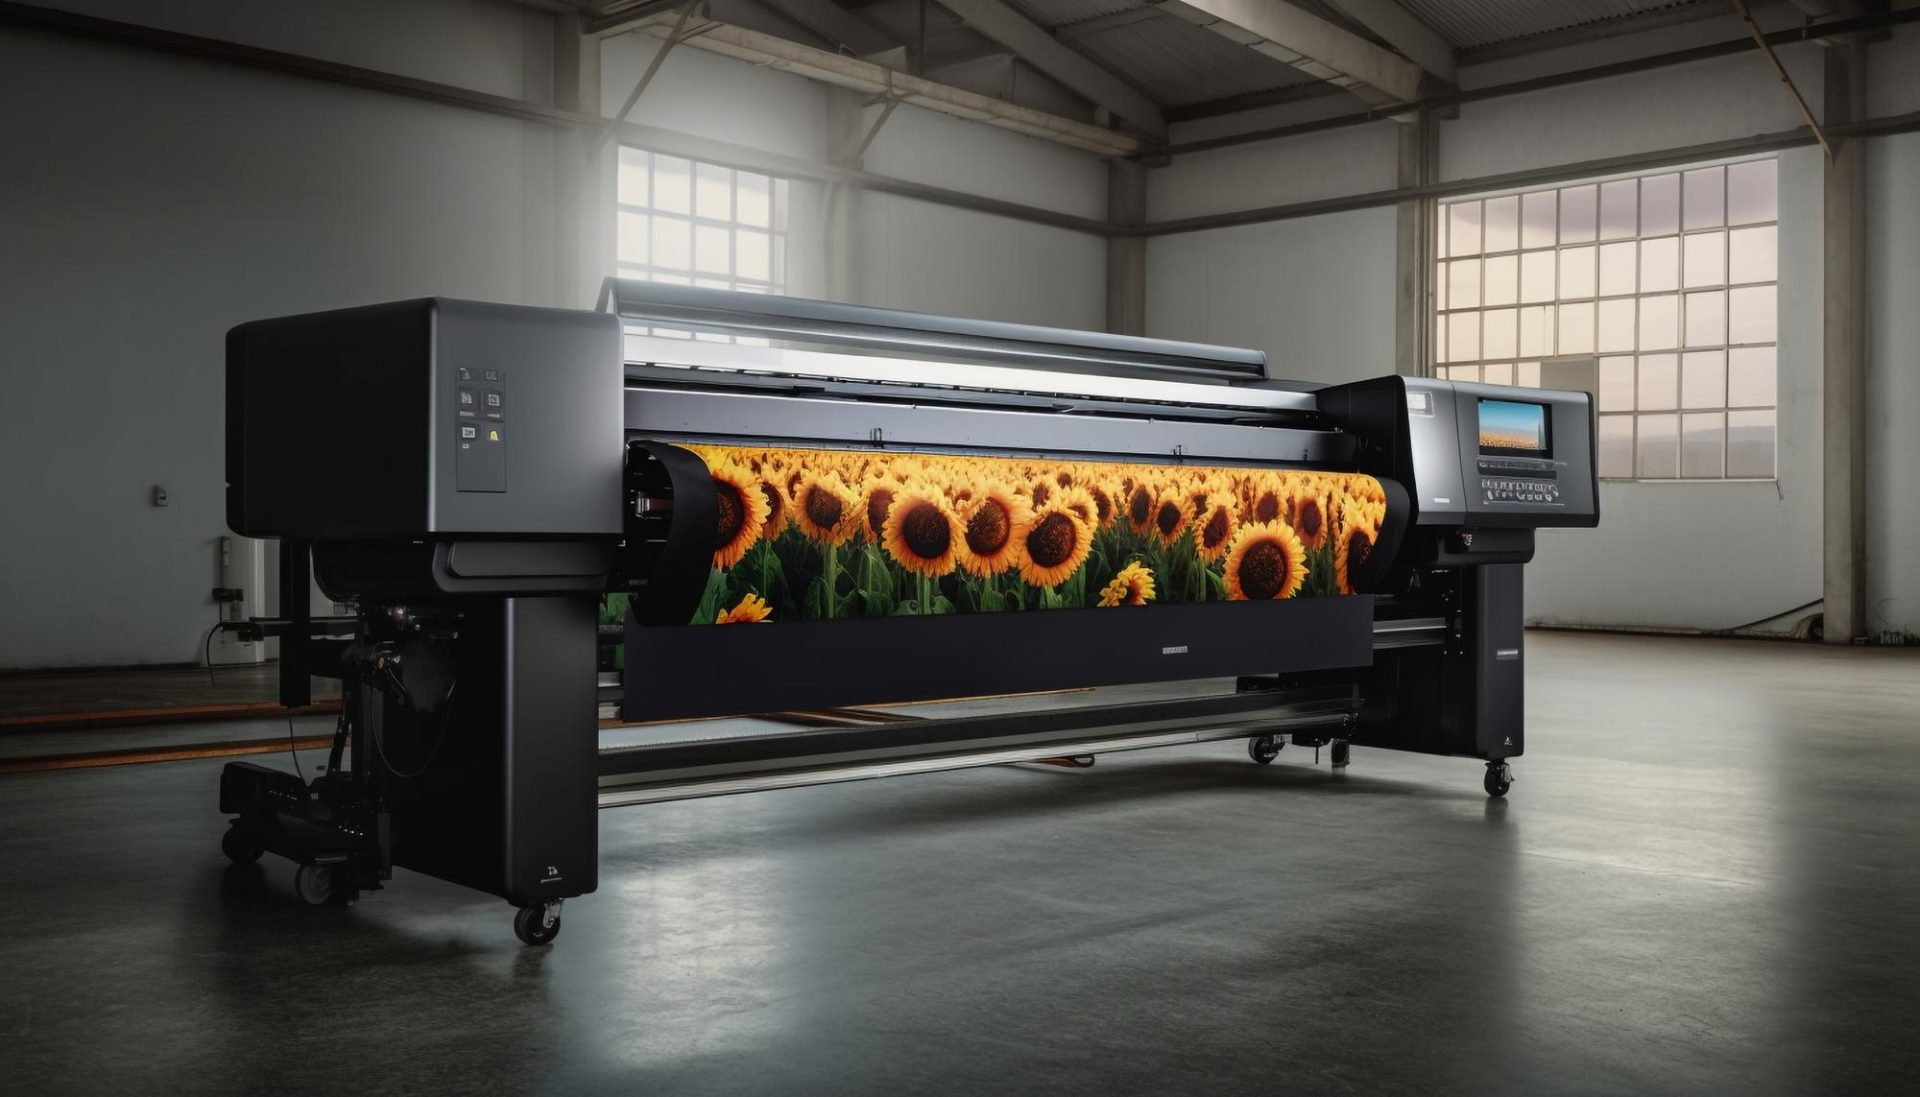 Impresora de gran tamaño donde podemos ver un diseño de un campo de girasoles